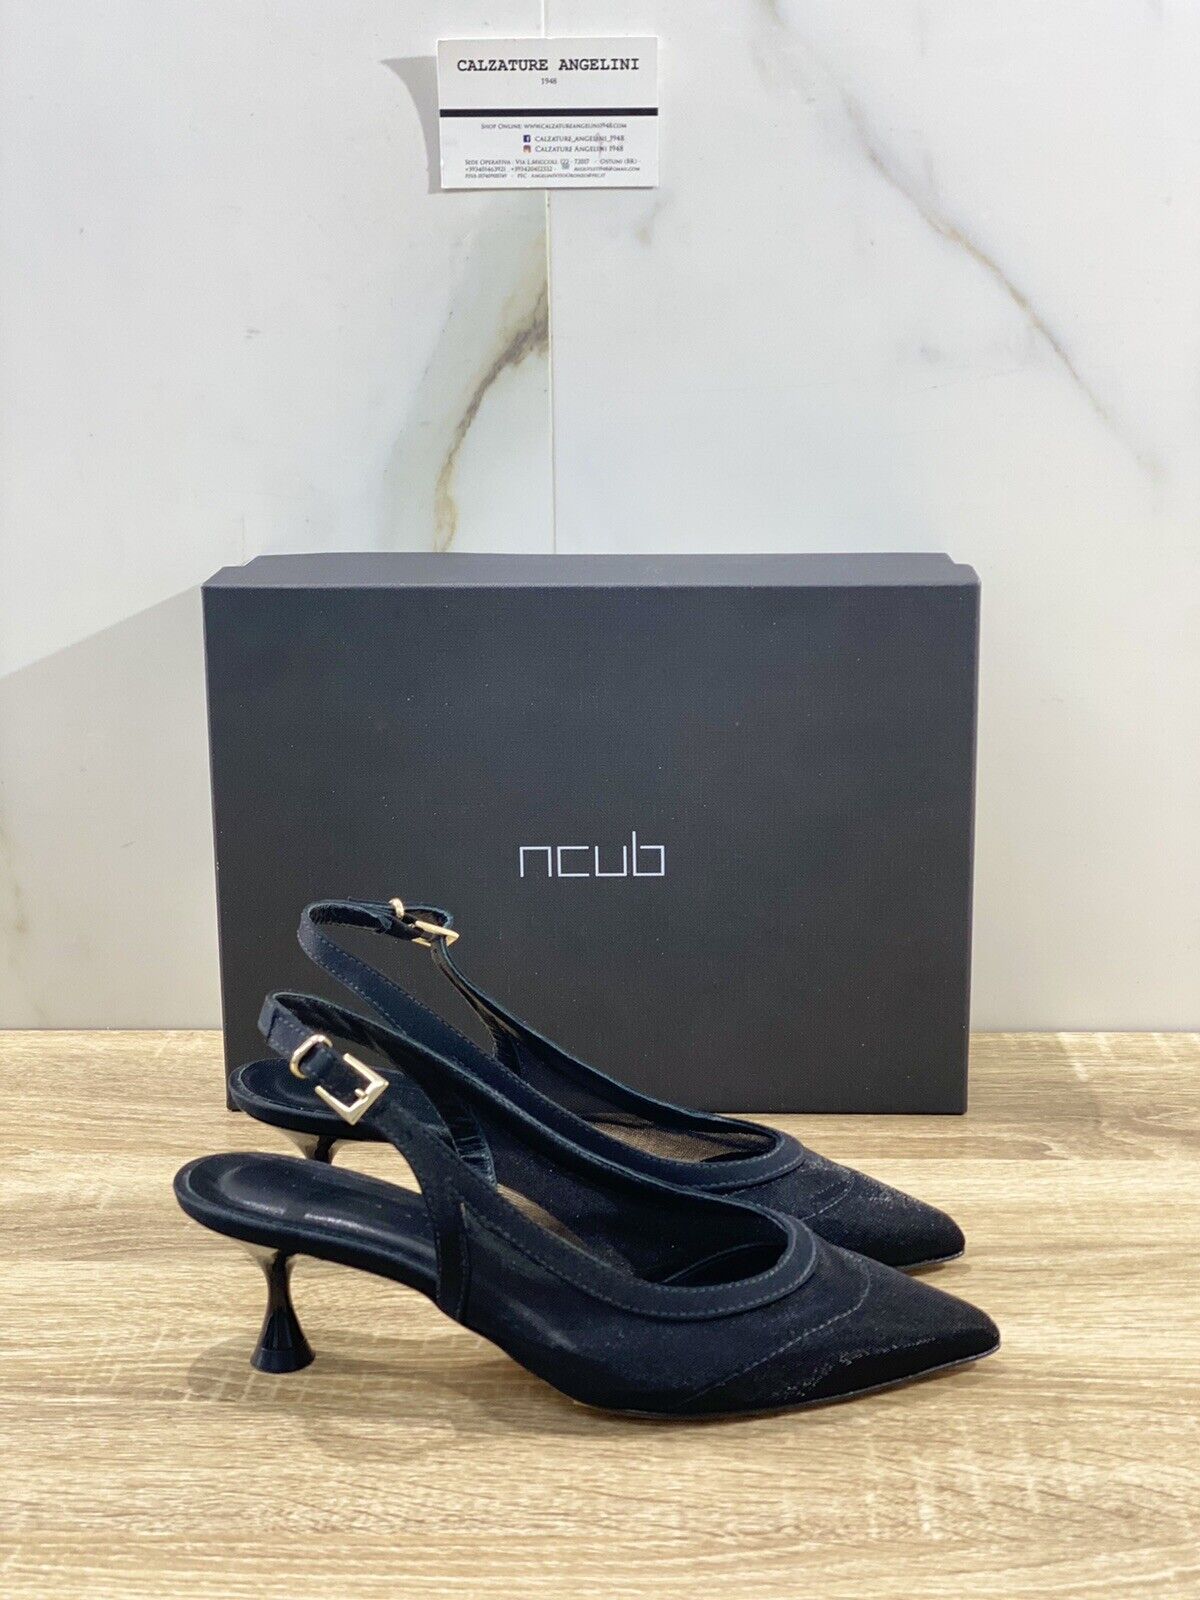 Ncub Sandalo donna Aida  rete Nero  luxury sandal NCub 36